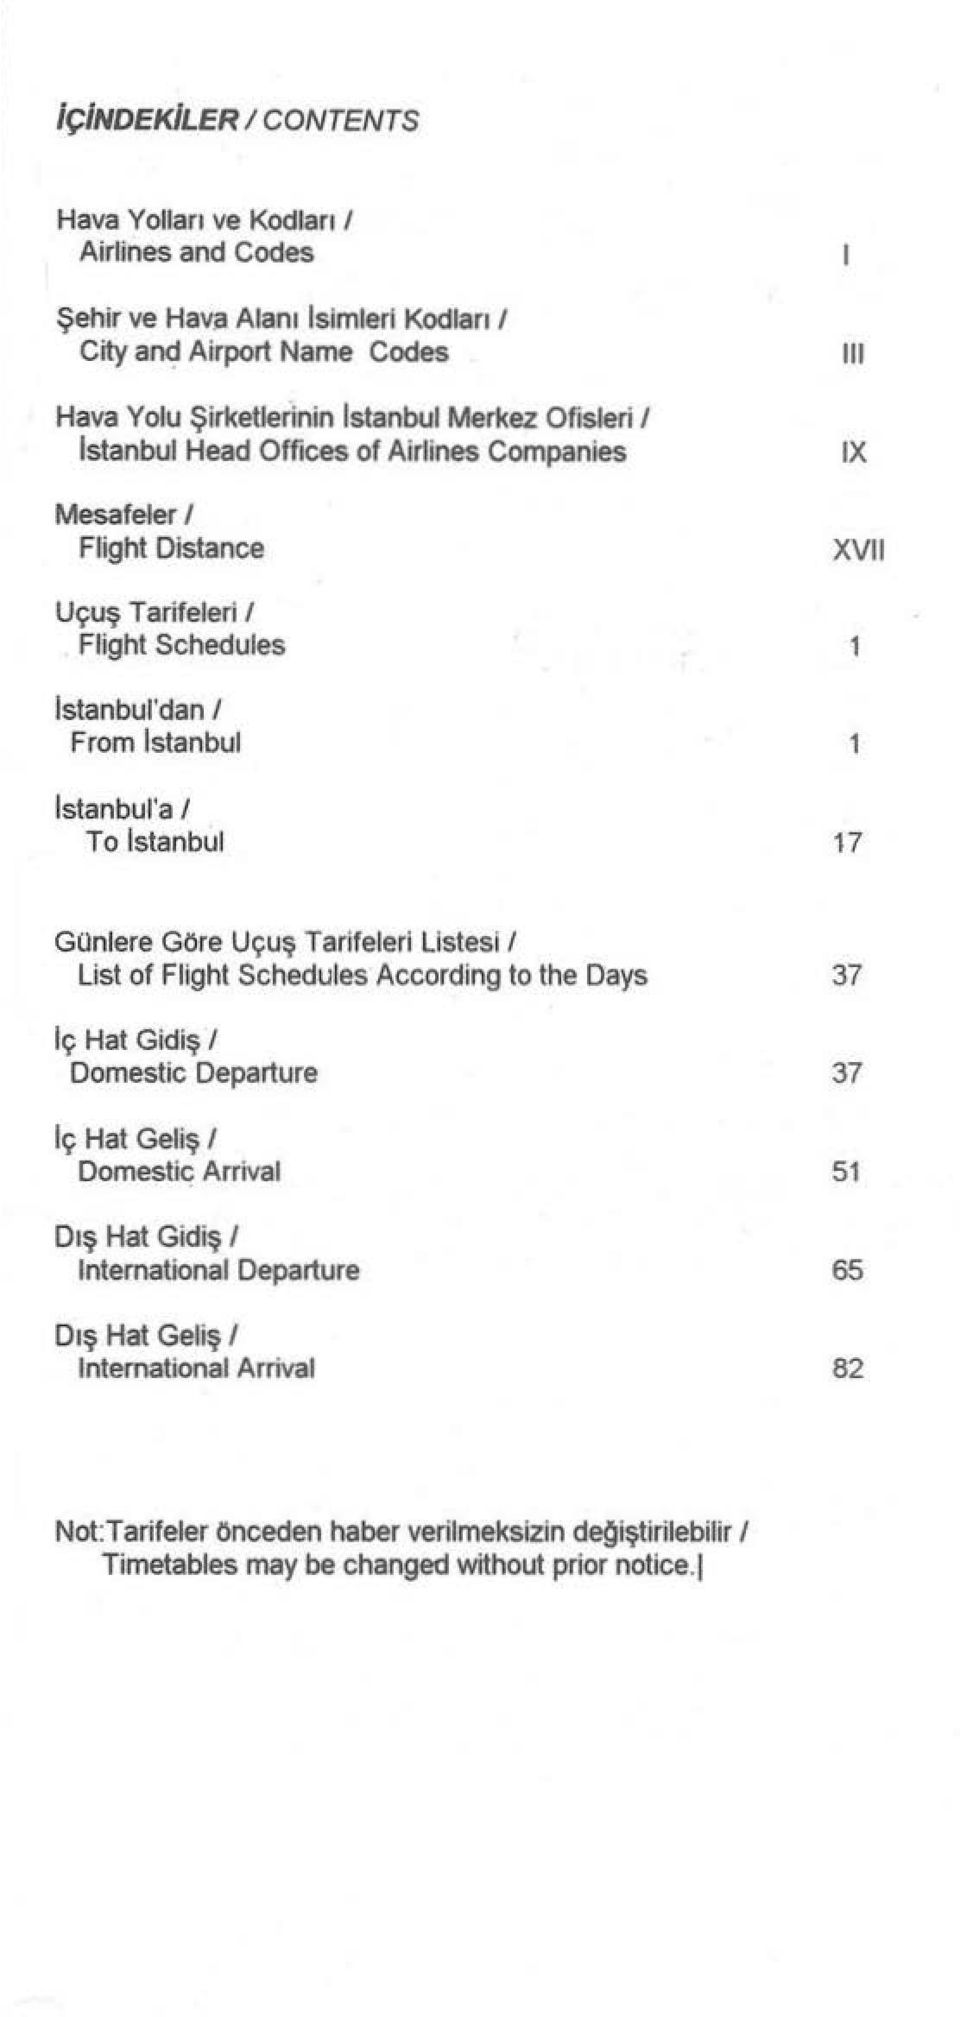 Istanbul 17 Günlere Göre Uçuş Tariteleri Listesi 1 List of Flight Schedules According to the Days Iç Hat Gidiş 1 Domestic Departure Iç Hat Geliş 1 Domestic Arrival Dış Hat Gidiş 1